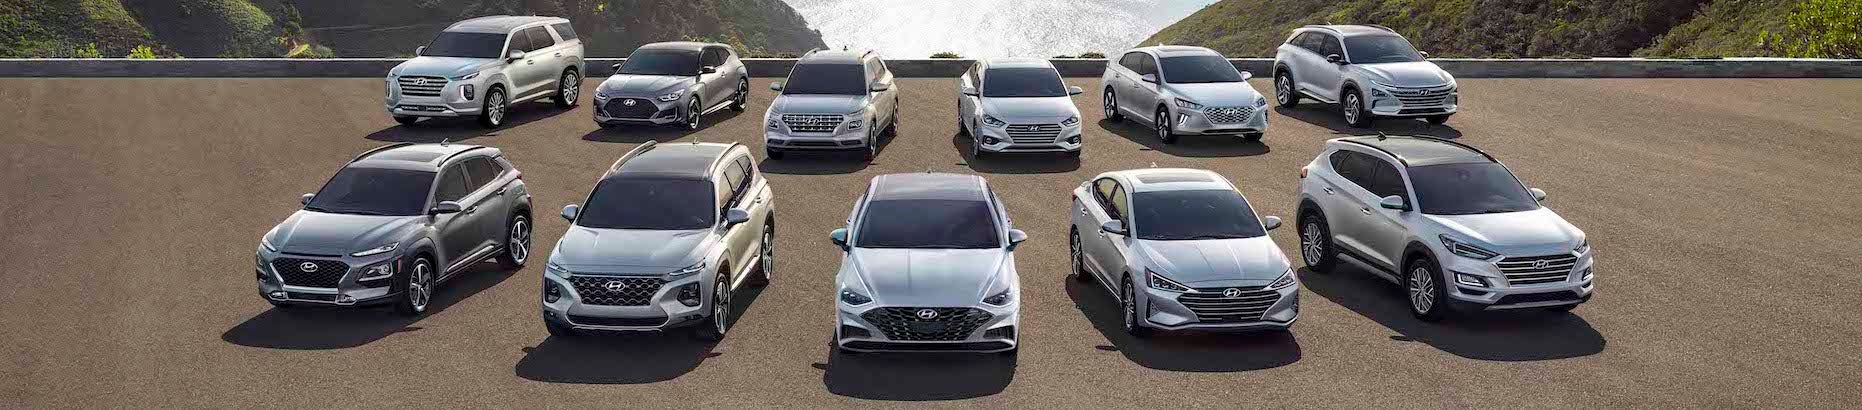 Hyundai Used Car Dealer Vehicles